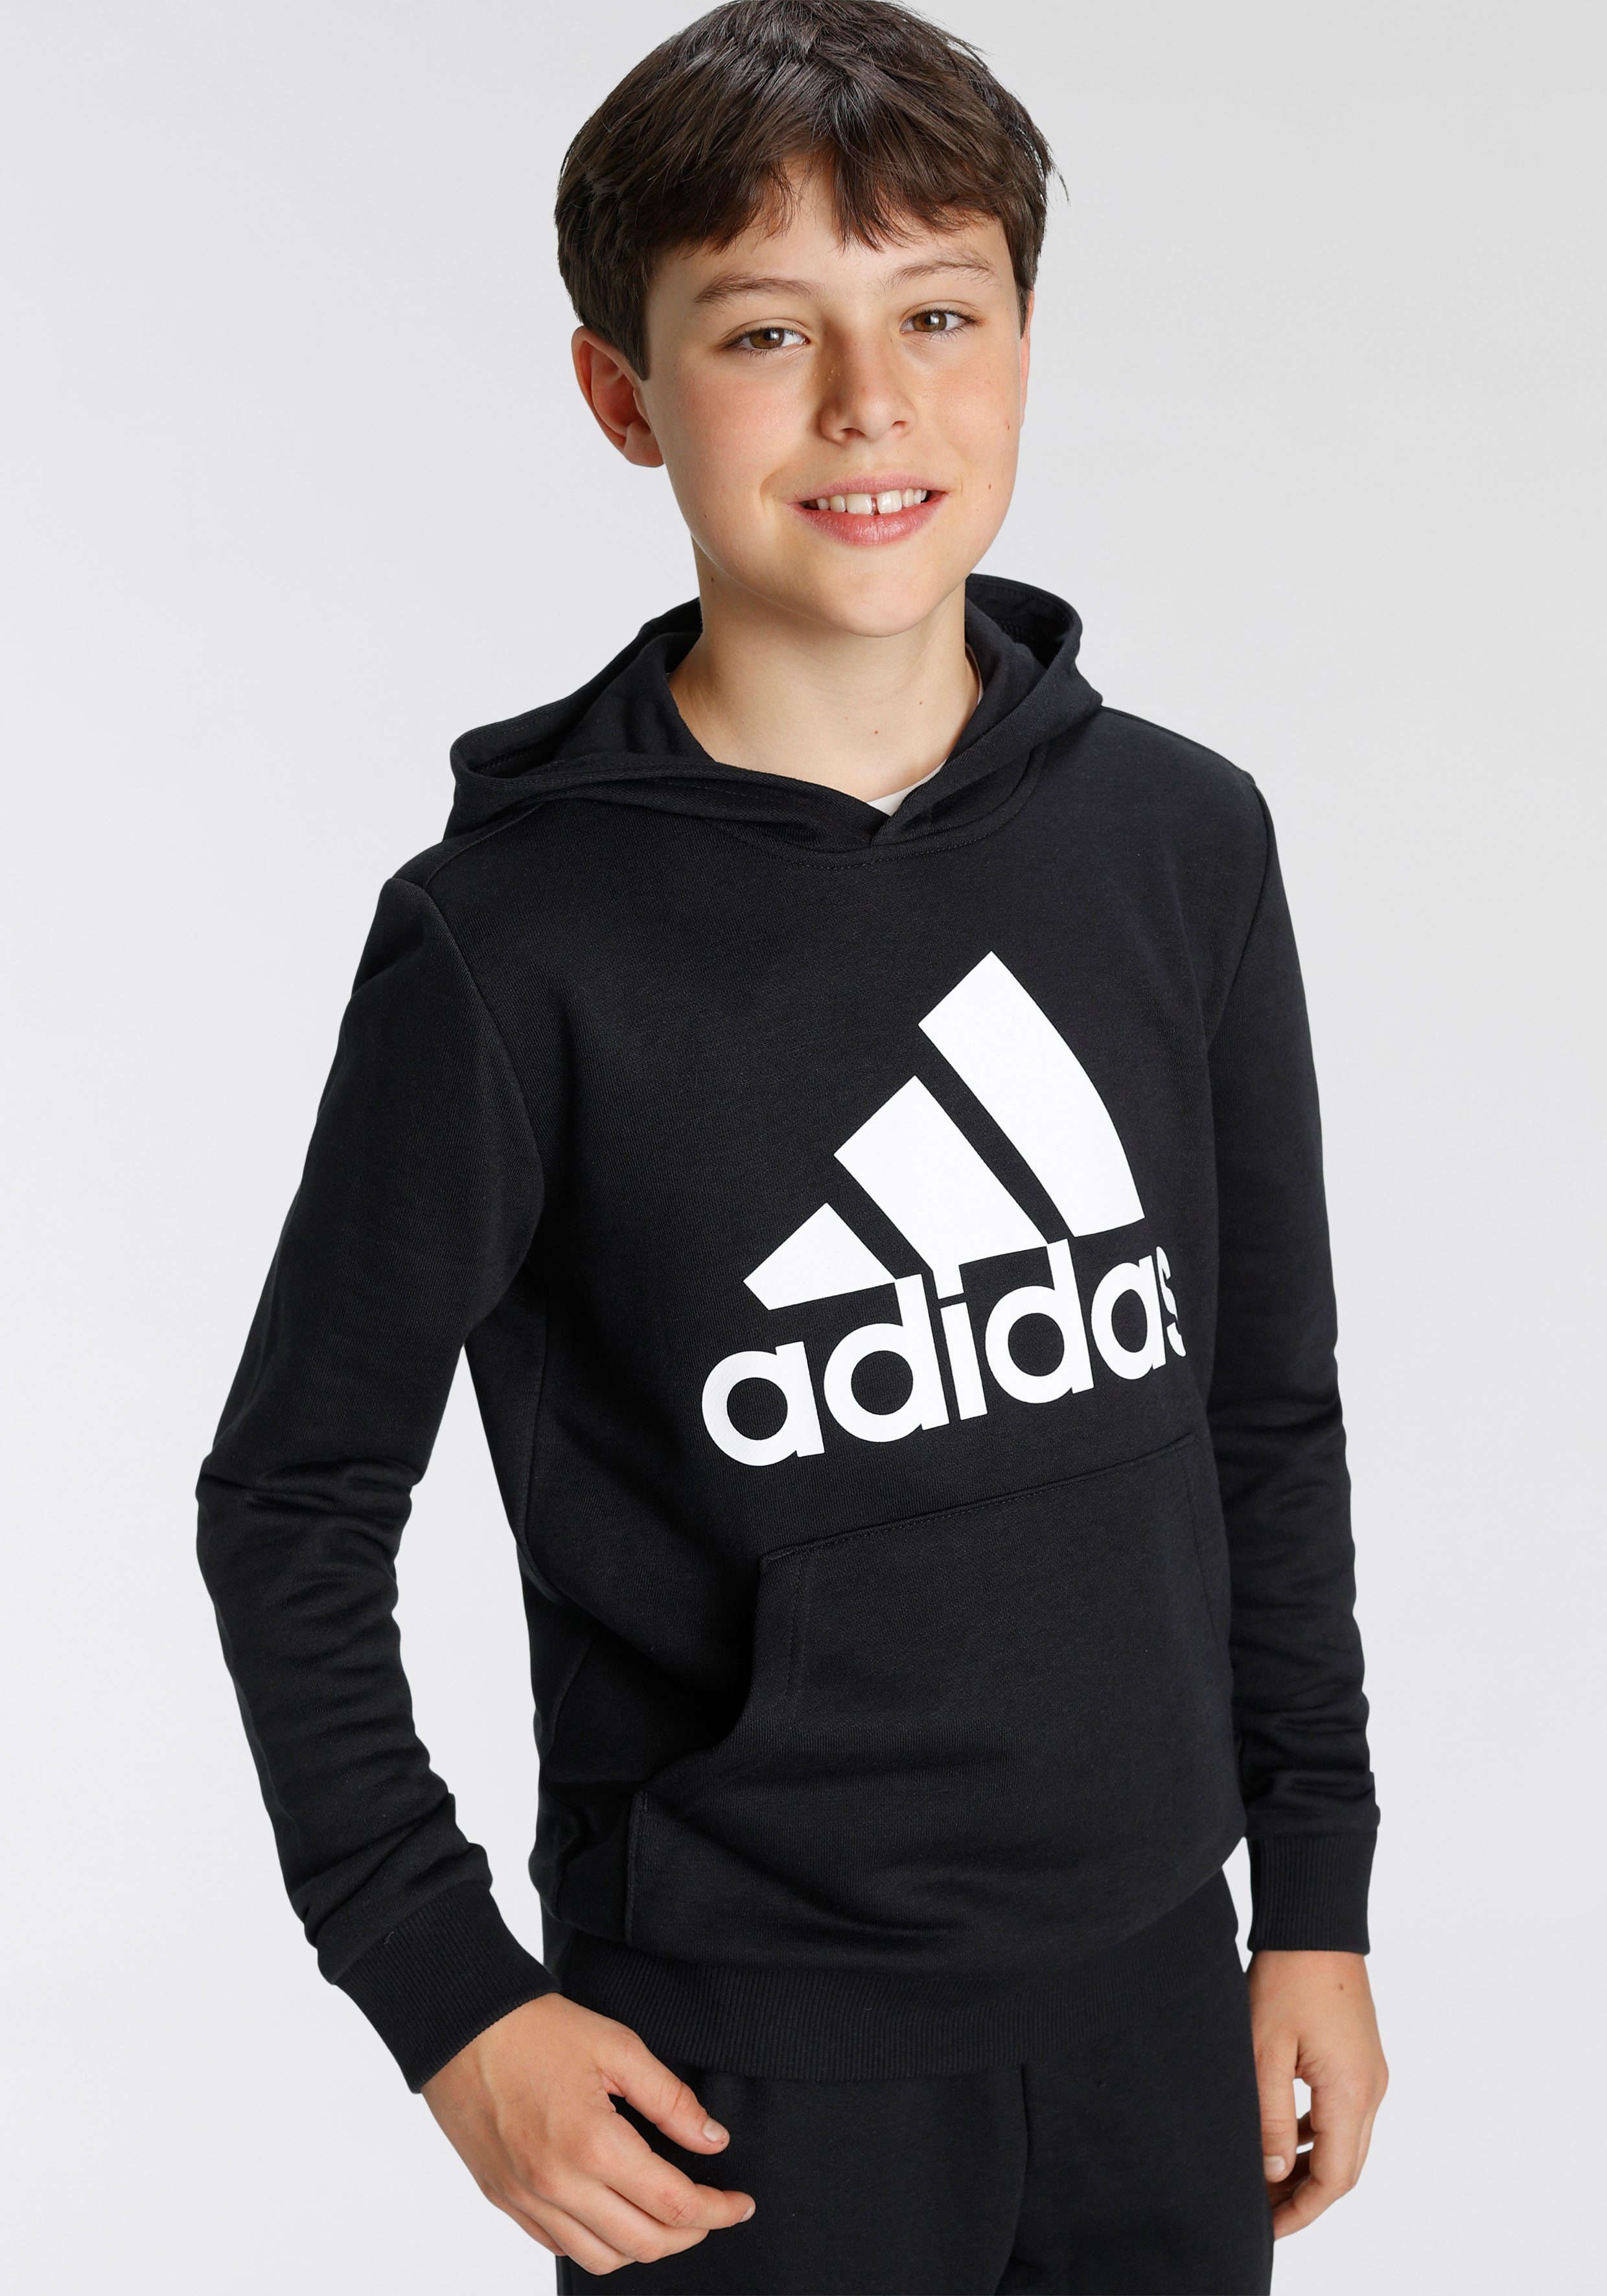 adidas Pullover Jungen online kaufen | OTTO